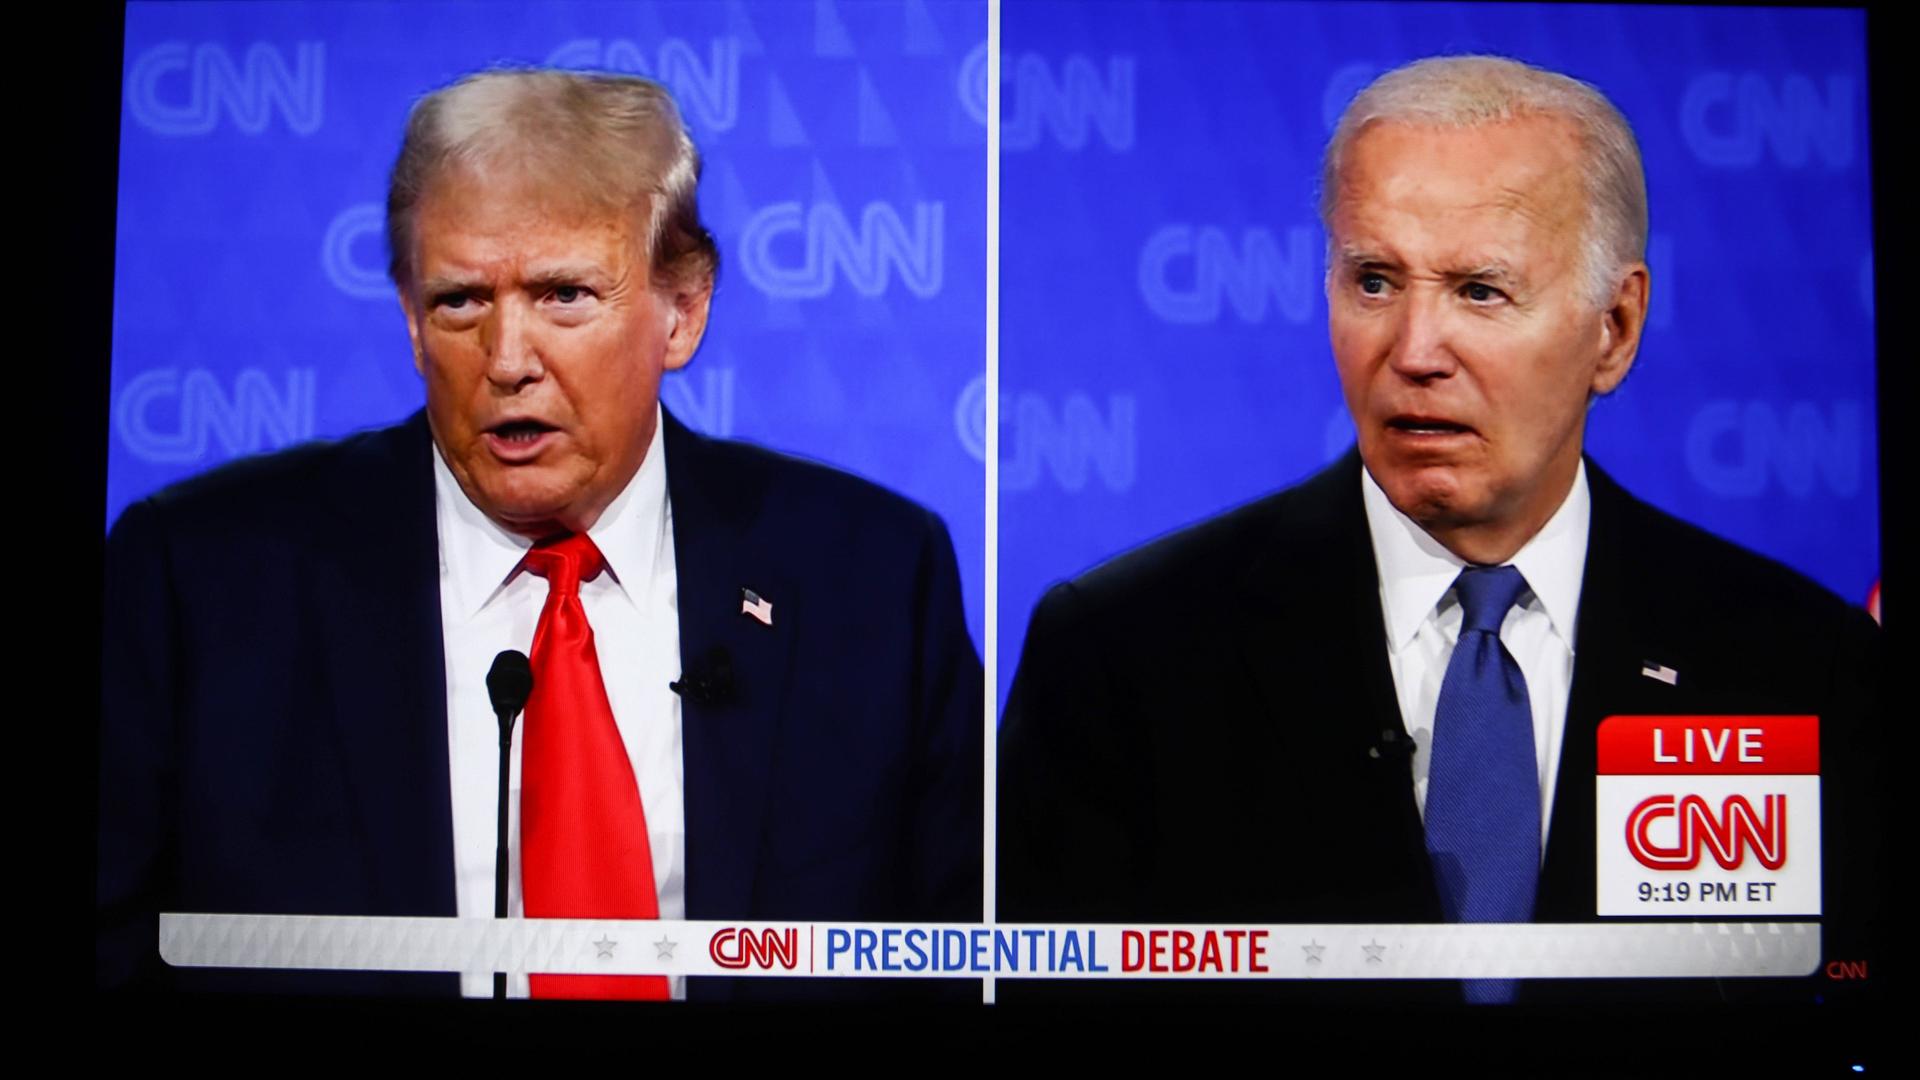 Das Foto aus der Fernseh-Diskussion zeigt den früheren US-Präsidenten Trump (links) und den Präsident Biden.